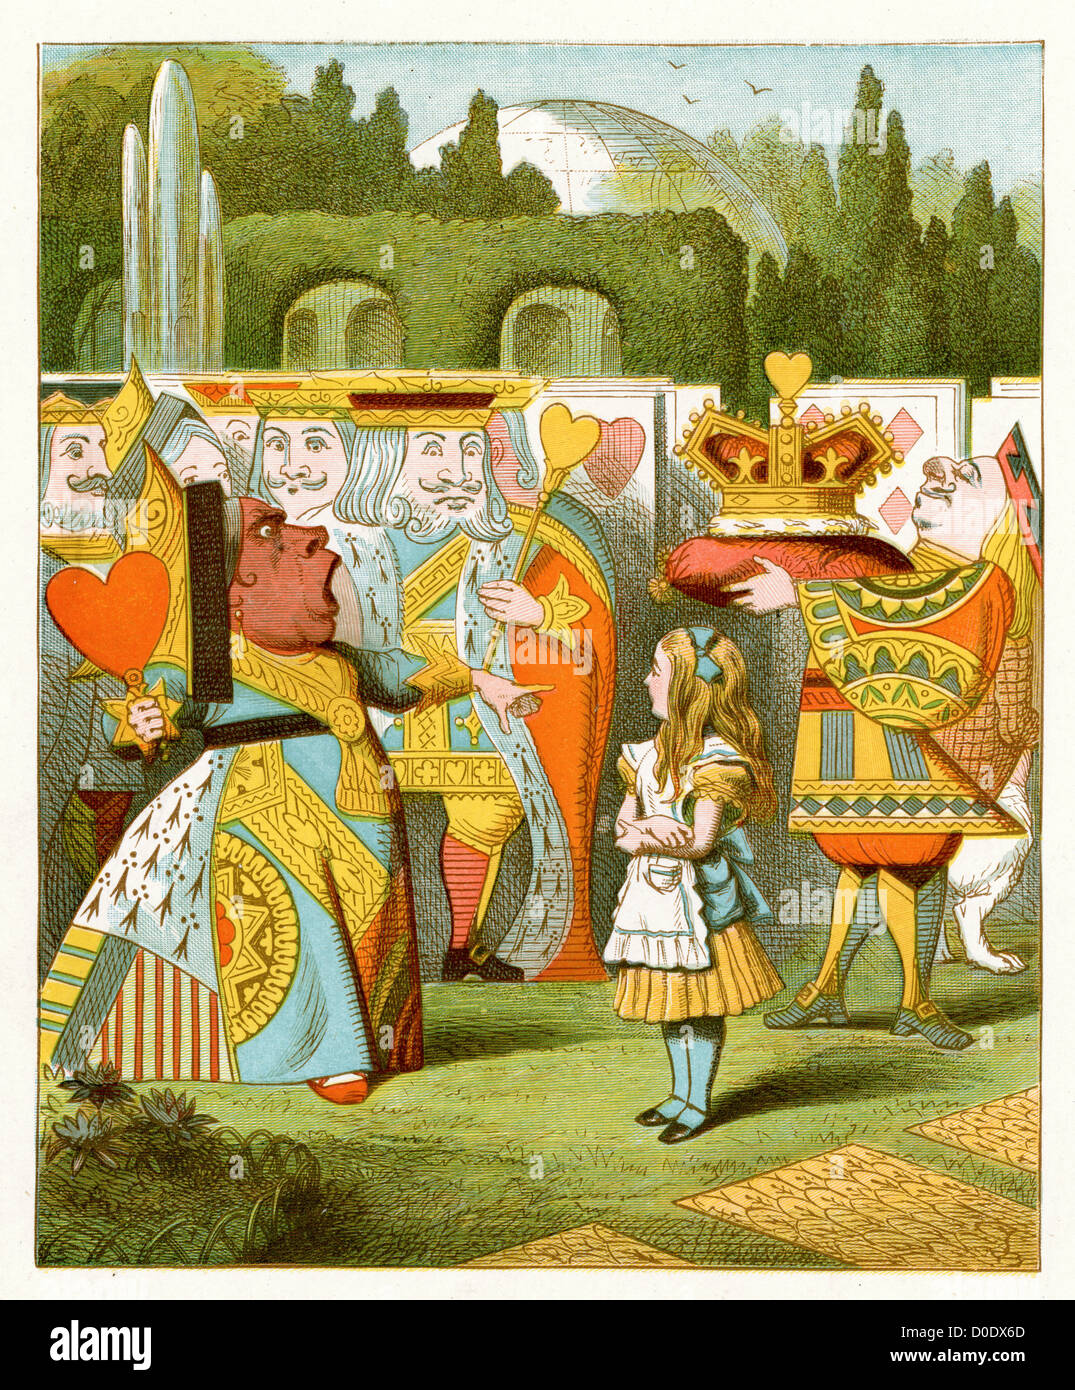 Die Königin ist gekommen!, von Lewis Carroll Geschichte Alice im Wunderland, Illustration von Sir John Tenniel 1871 Stockfoto